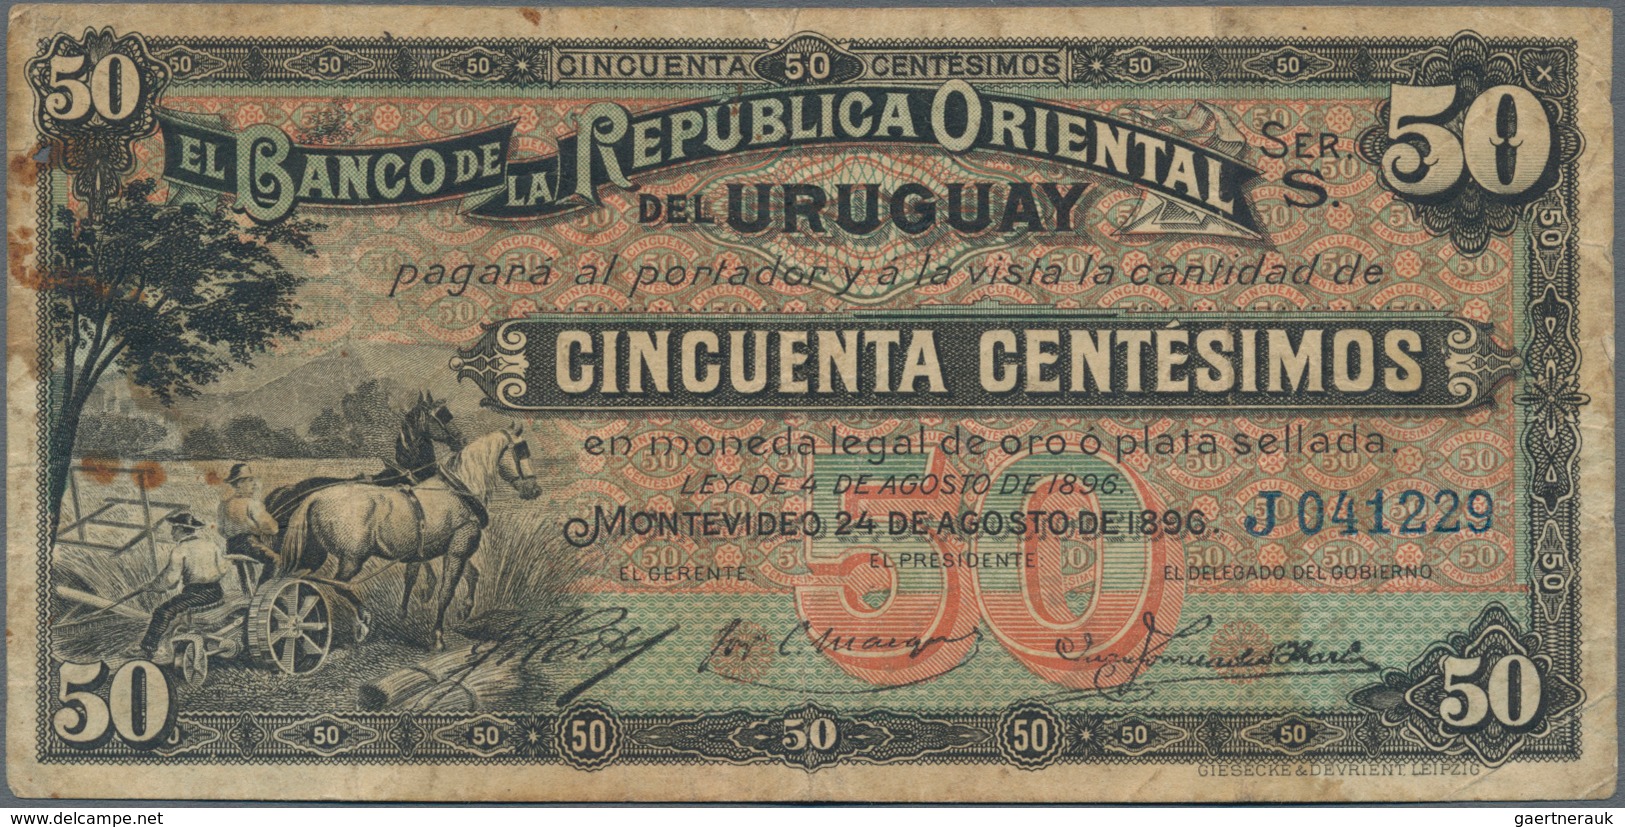 Uruguay: El Banco De La Republica Oriental Del Uruguay 50 Centesimos 1896, P.2 In About F Condition. - Uruguay